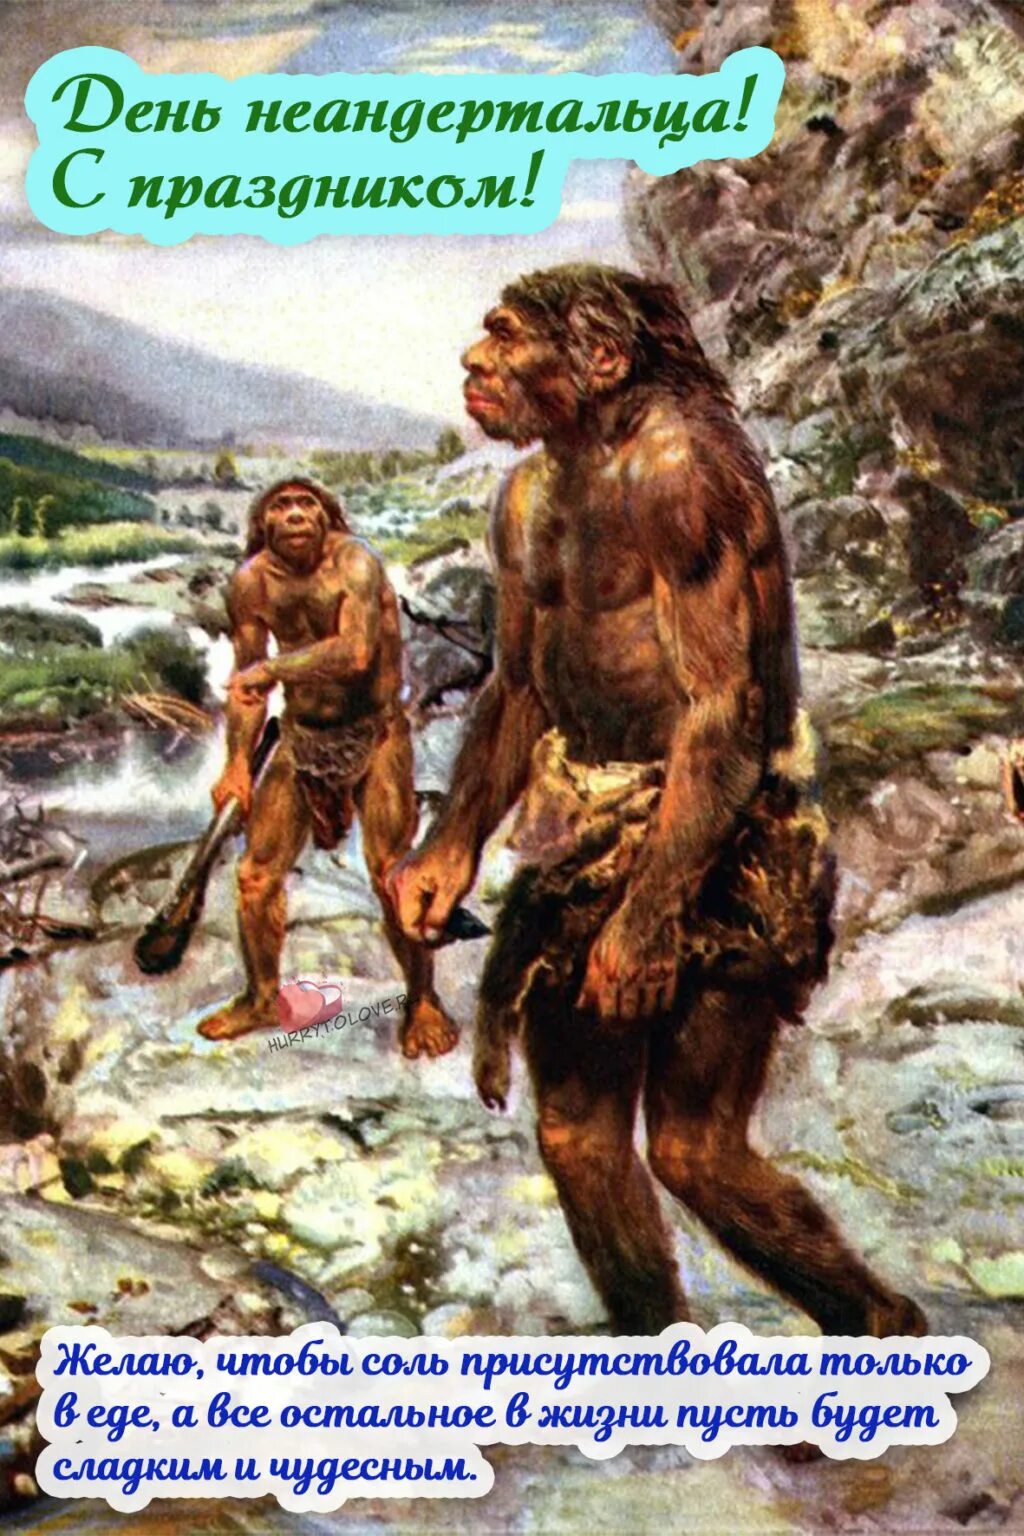 Палеоантропы или древние люди неандертальцы. Древние люди - Палеоантропы, неандертальцы. Древние люди Палеоантропы рост.